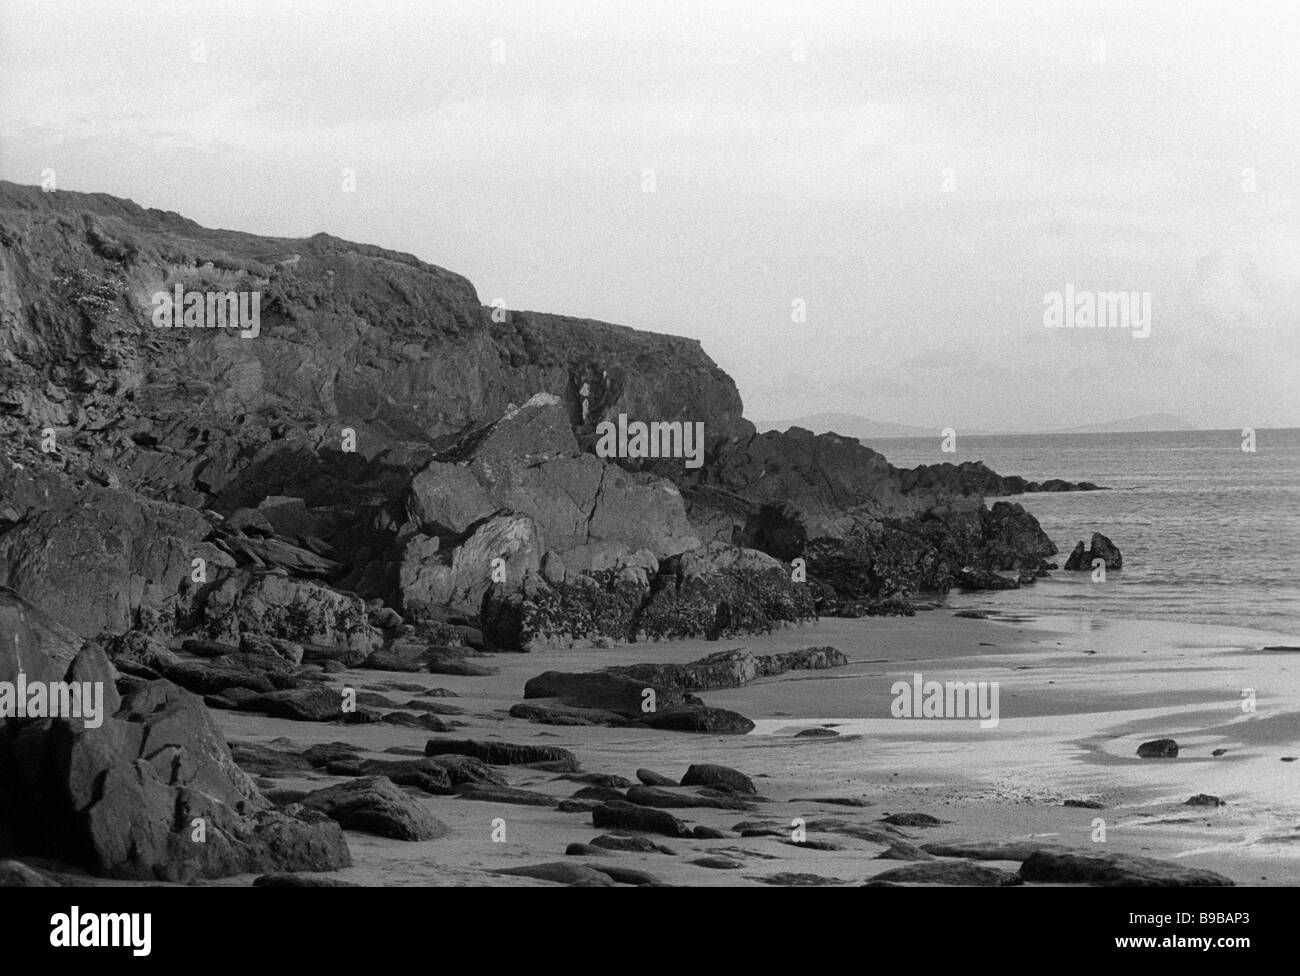 Dingle Bay, Ireland Stock Photo